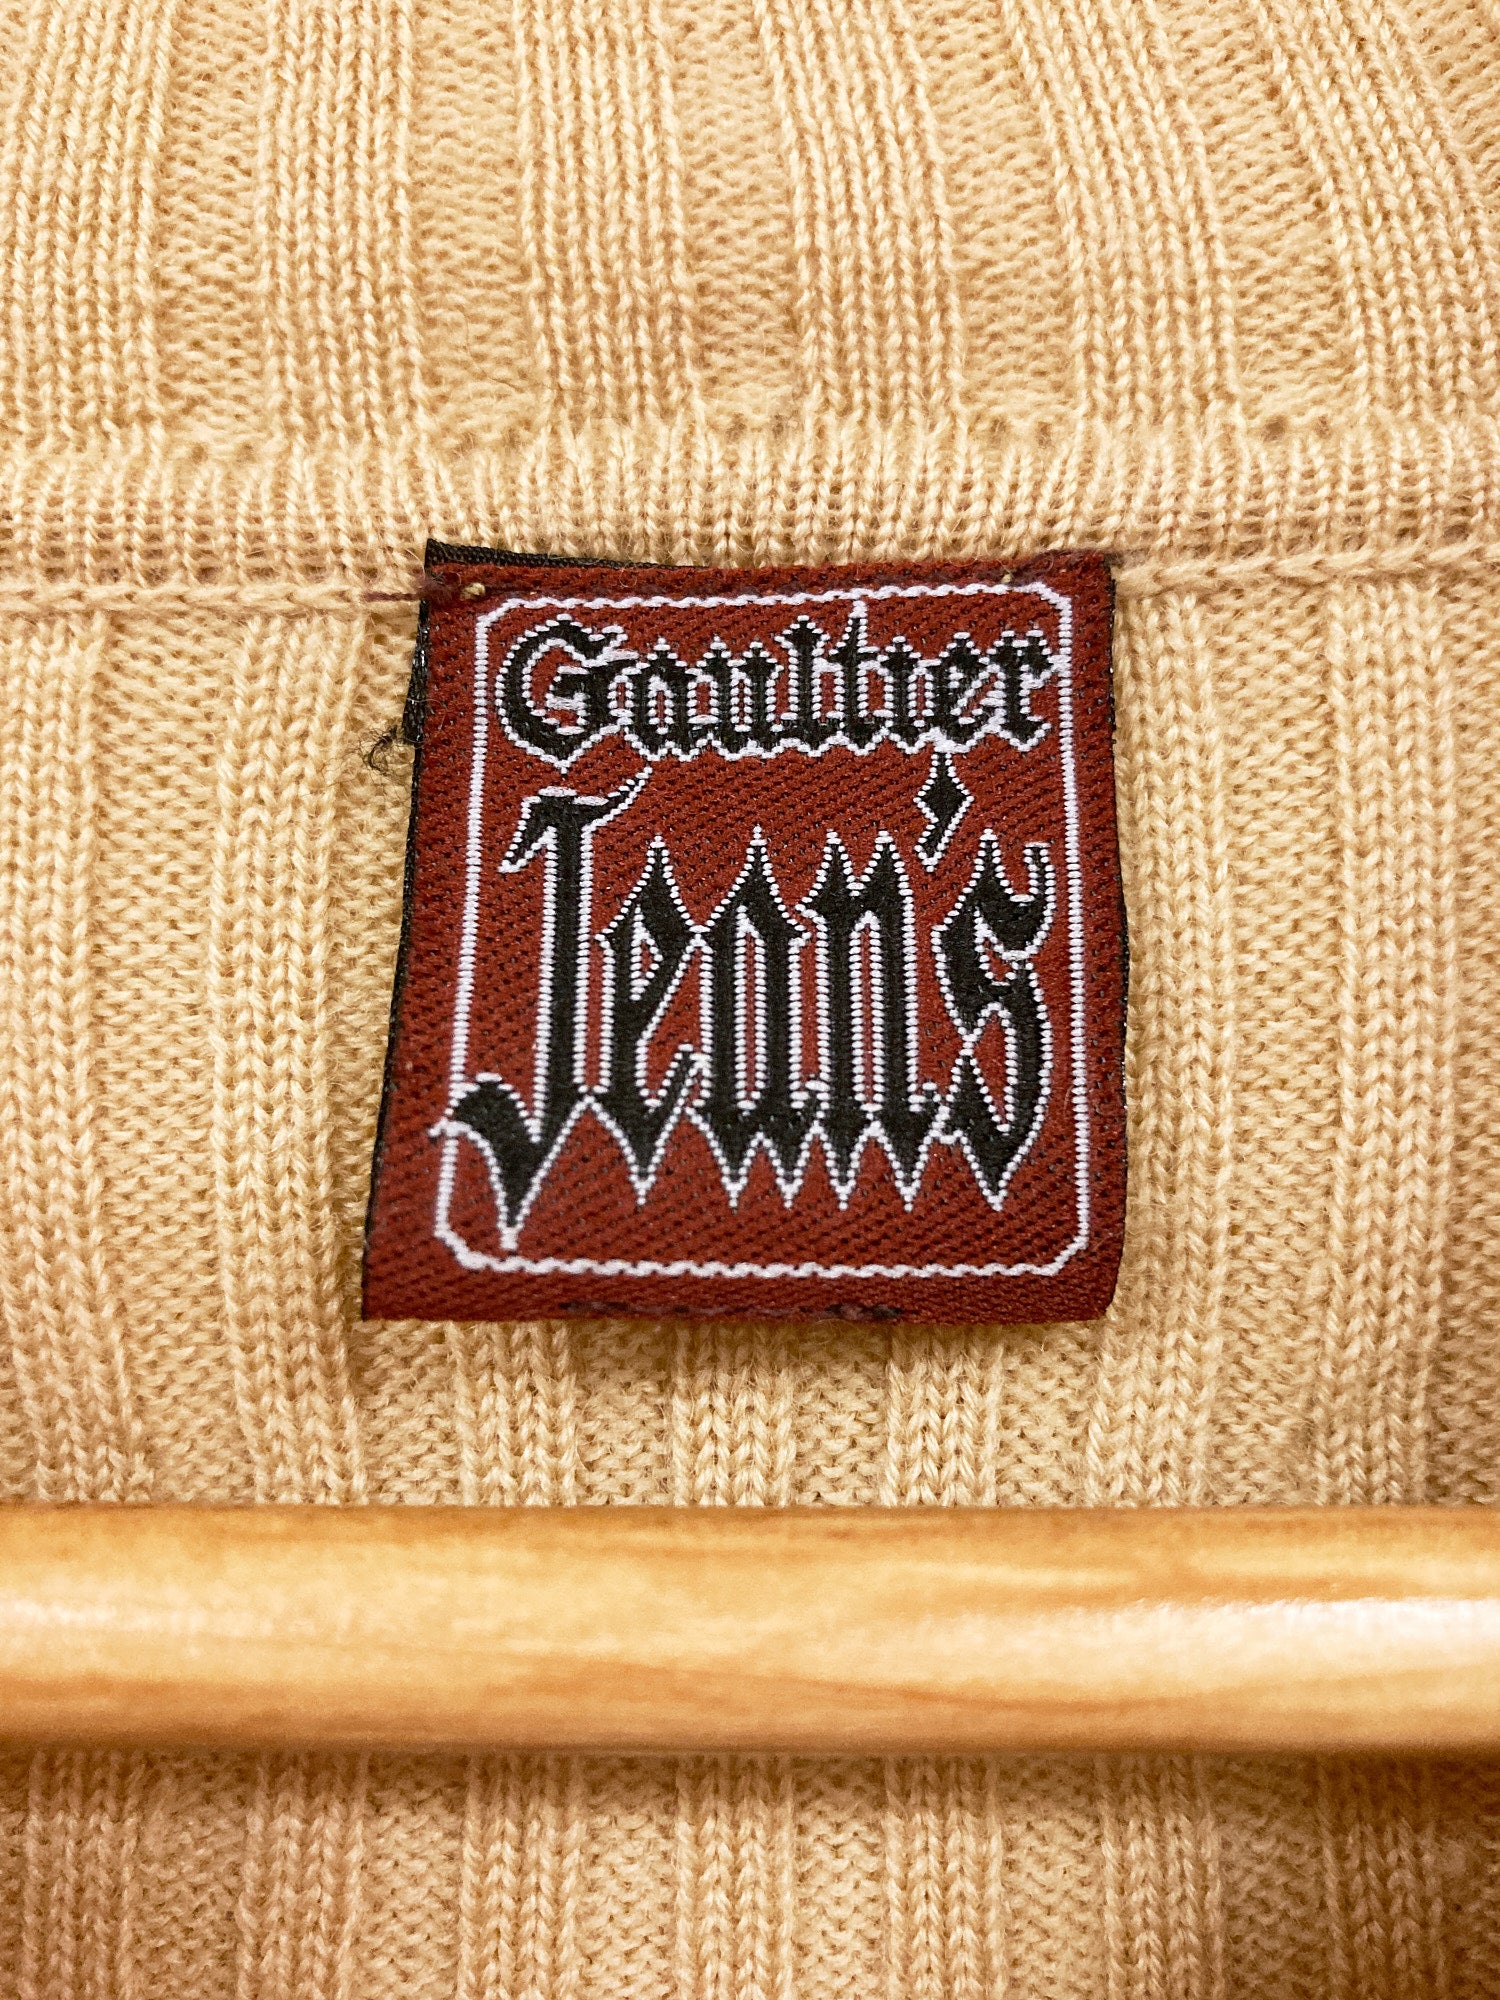 Jean Paul Gaultier Jean's beige wool rib knit zipped high neck jumper - size 48